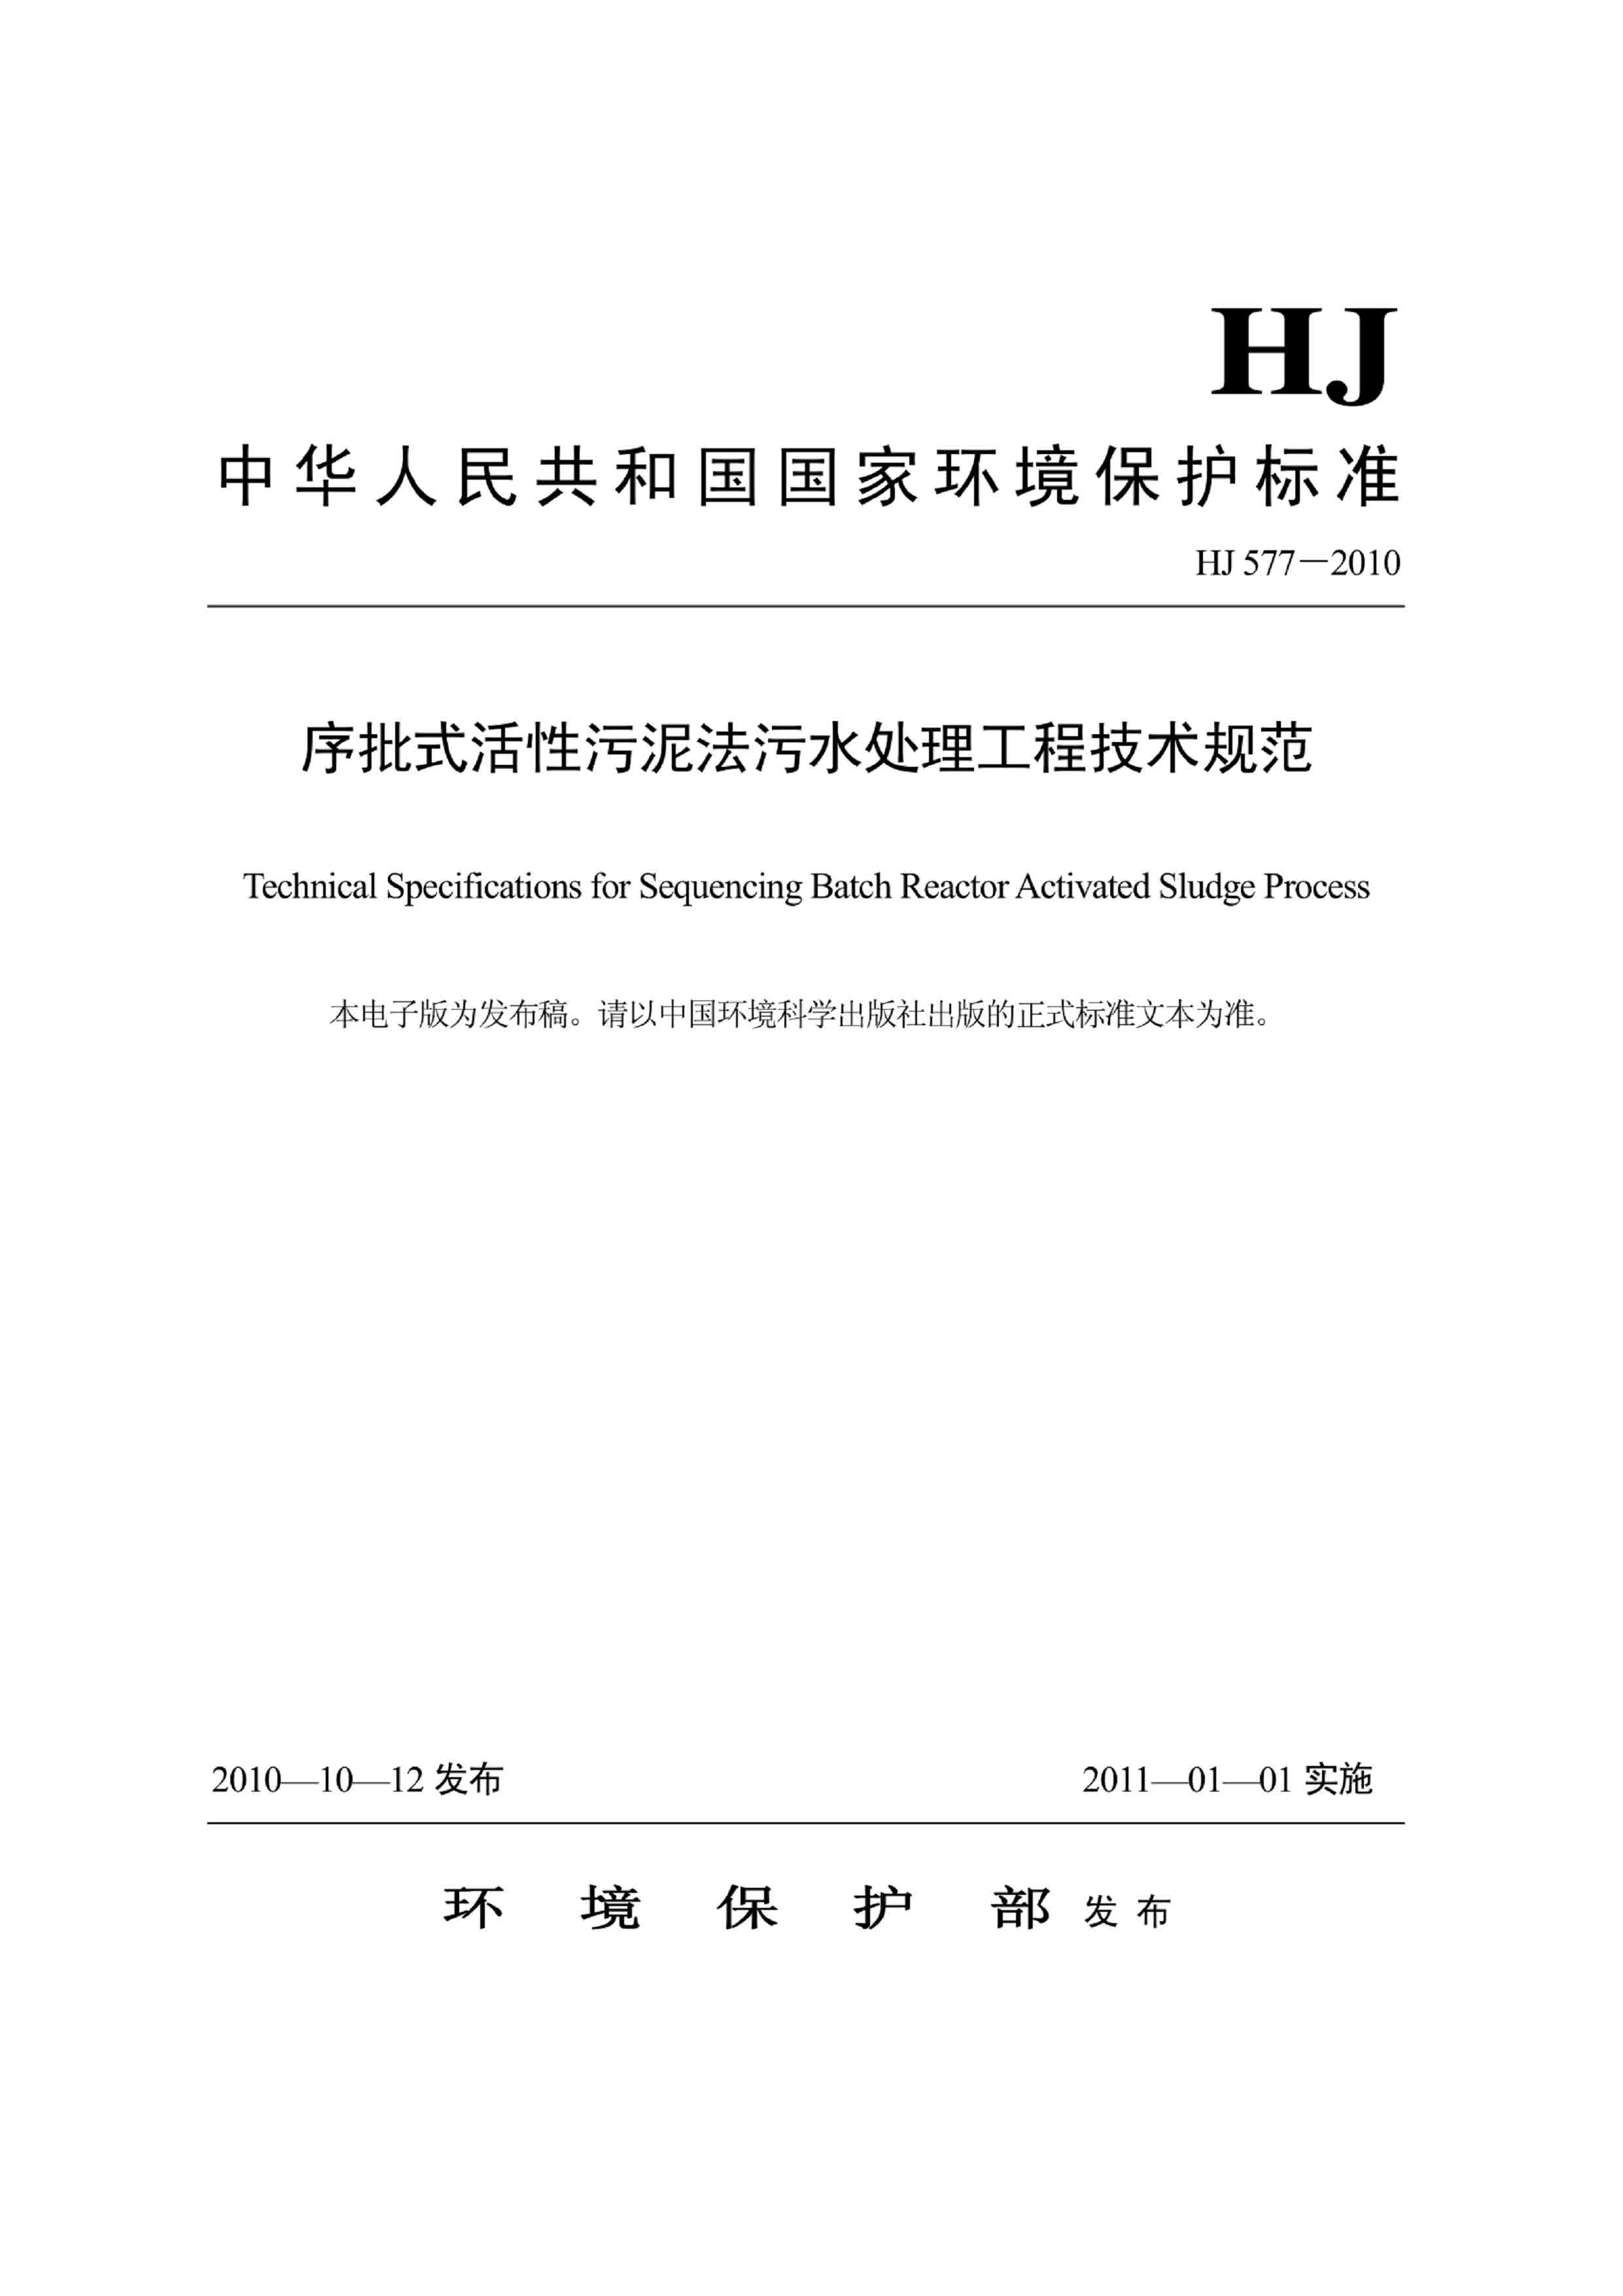 hj577-2010 序批式活性污泥法污水处理工程技术规范  下载